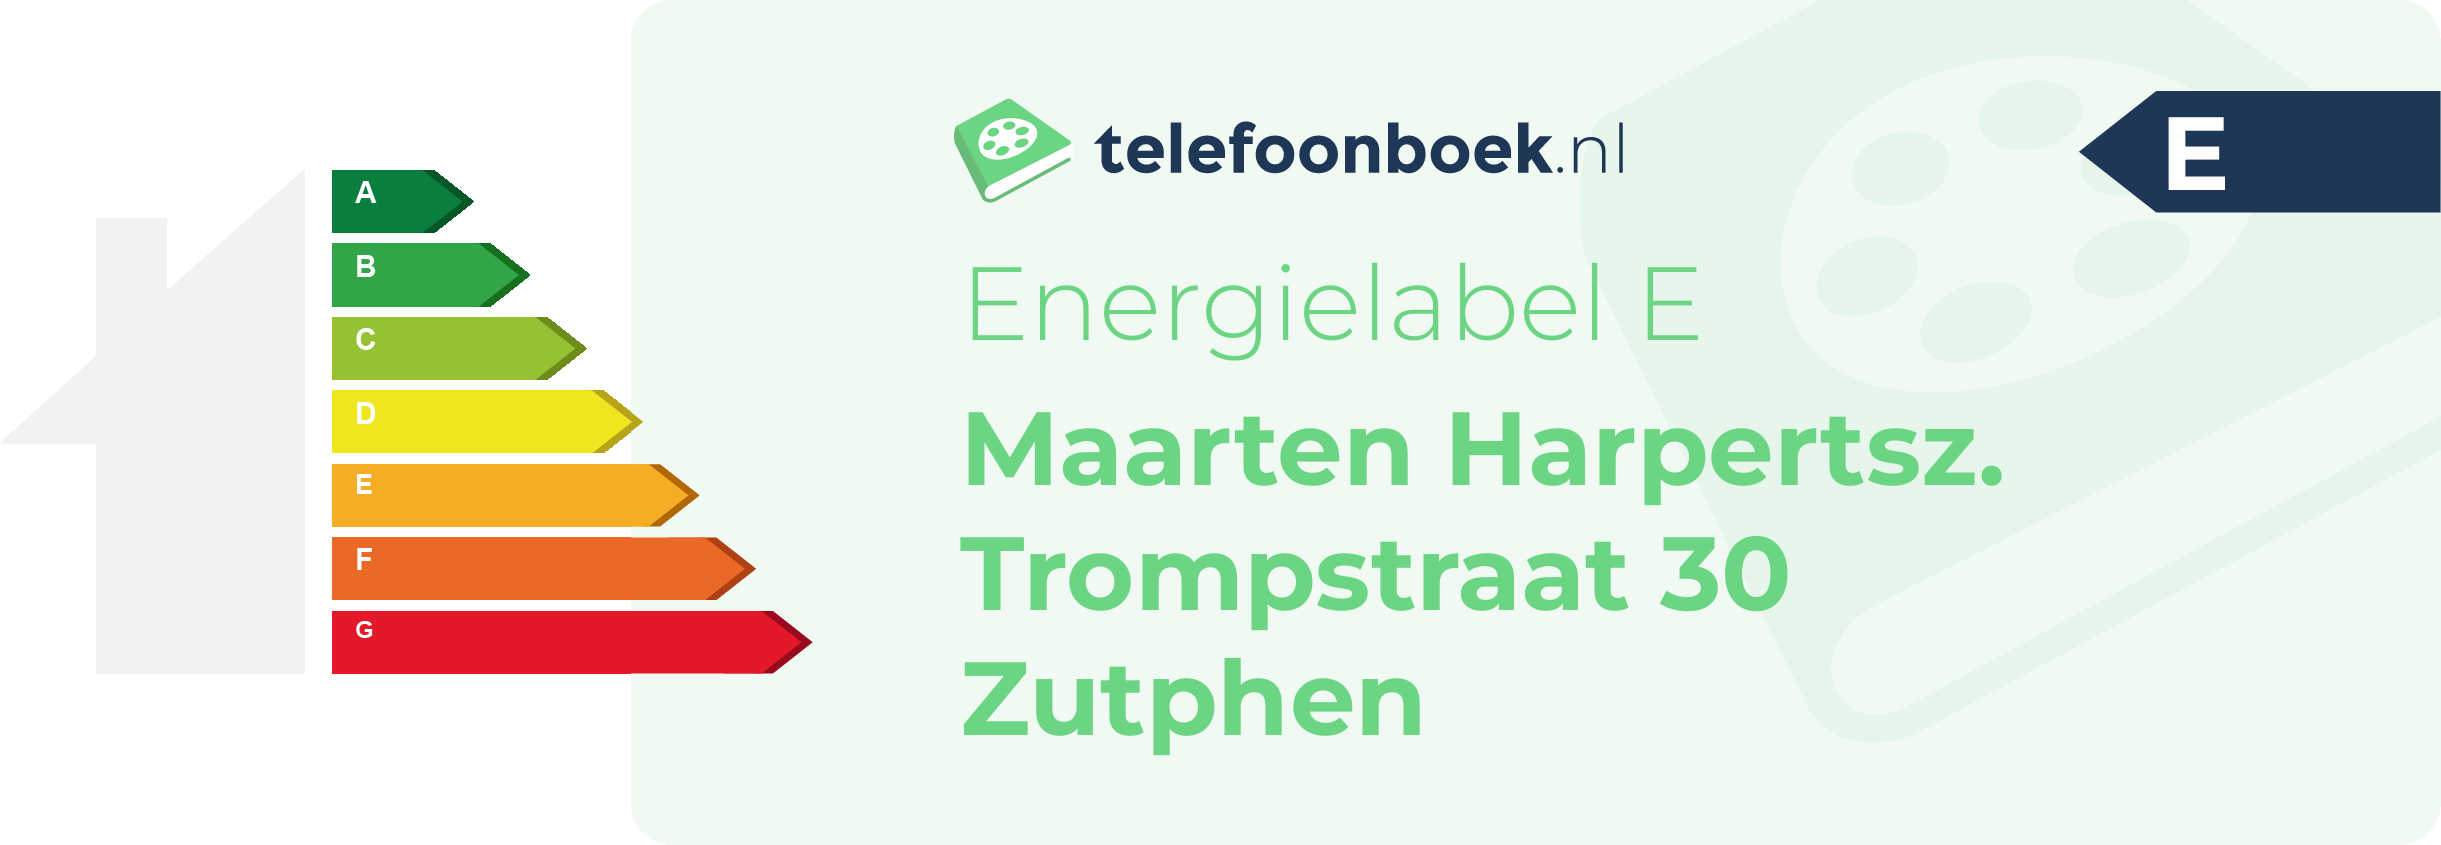 Energielabel Maarten Harpertsz. Trompstraat 30 Zutphen